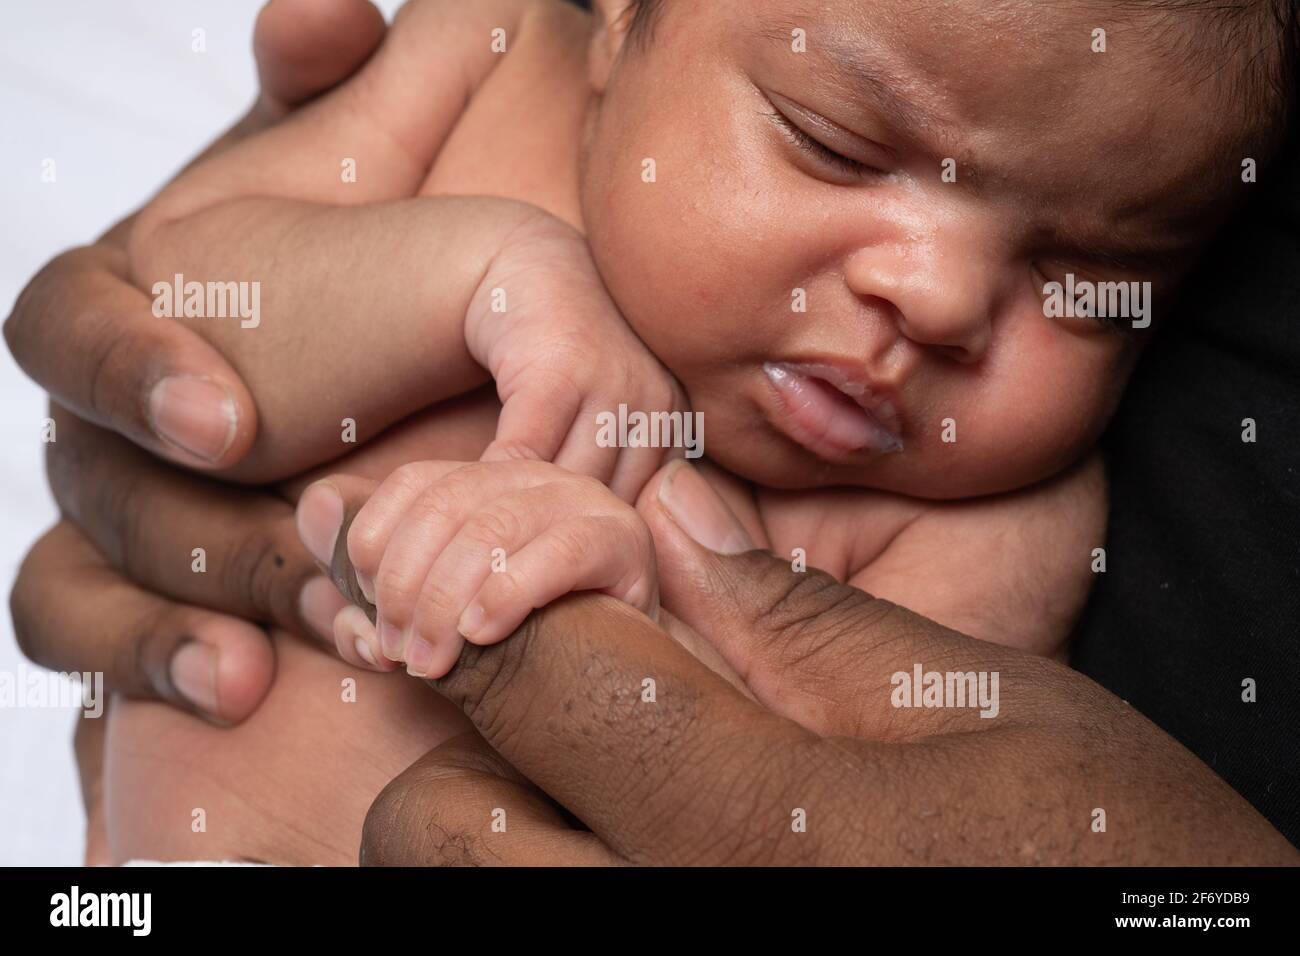 Nouveau-né bébé fille de 3 semaines saisissant le doigt du père Banque D'Images